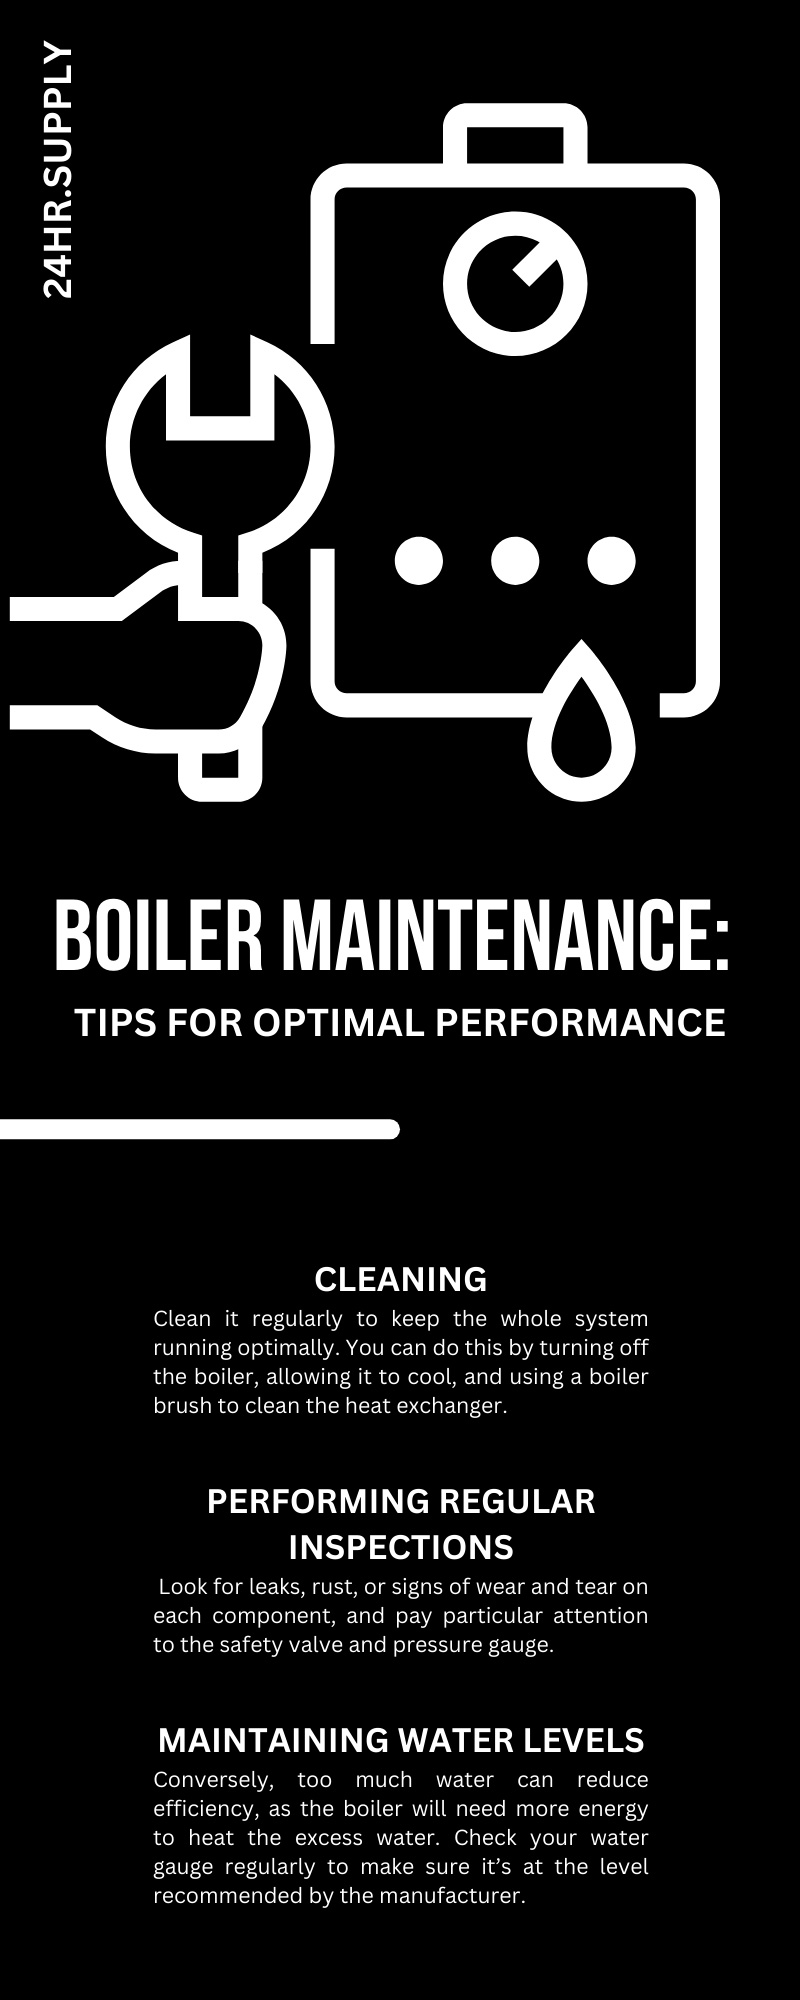 Boiler Maintenance: Tips for Optimal Performance